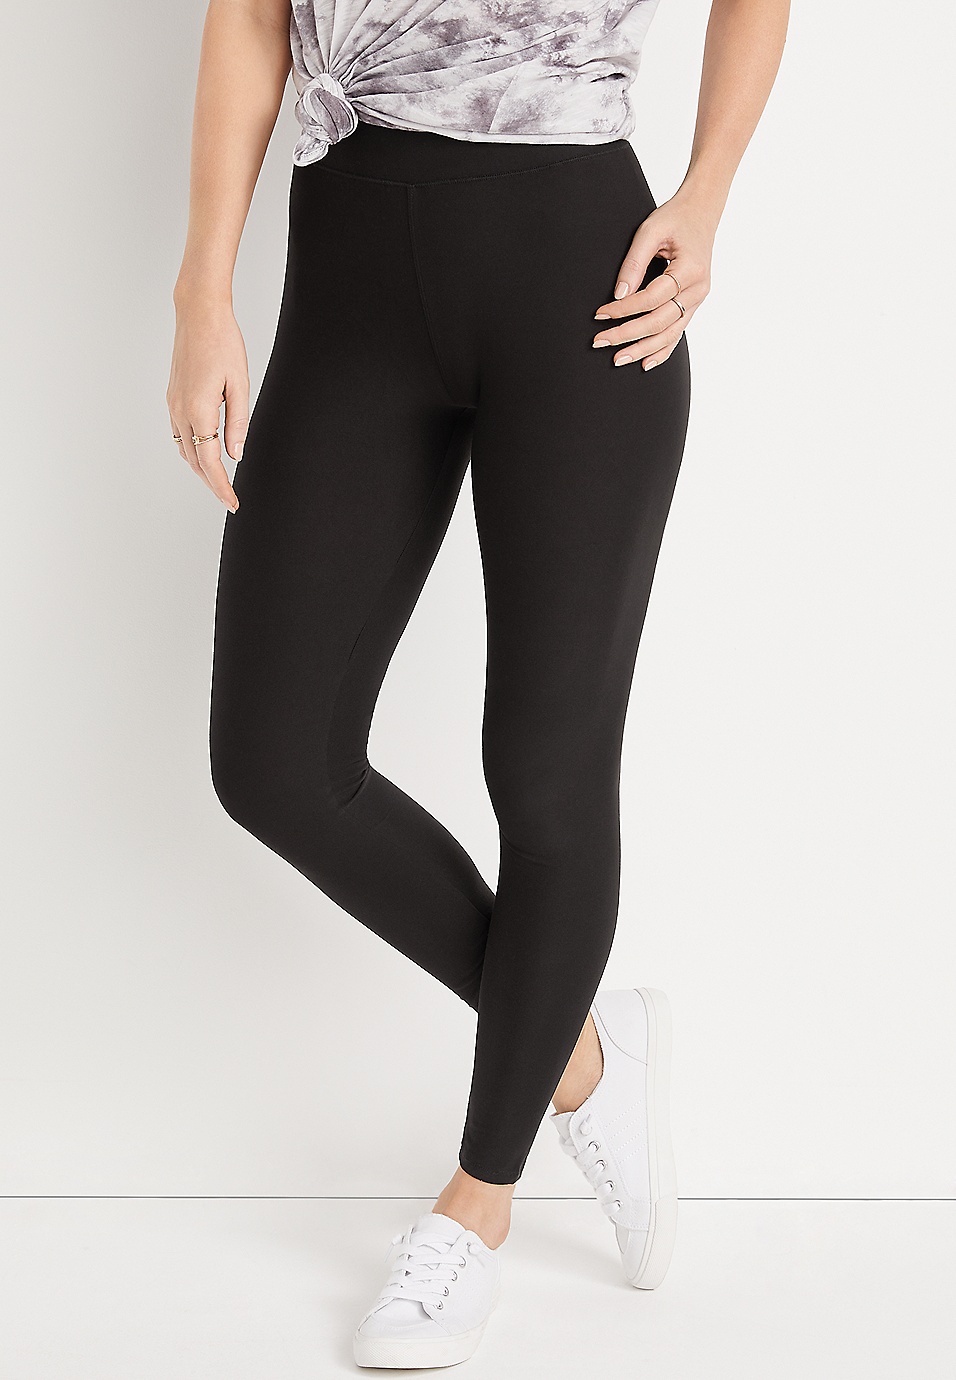 Ultra-soft denim legging, Hue, Shop Women's Leggings & Jeggings Online